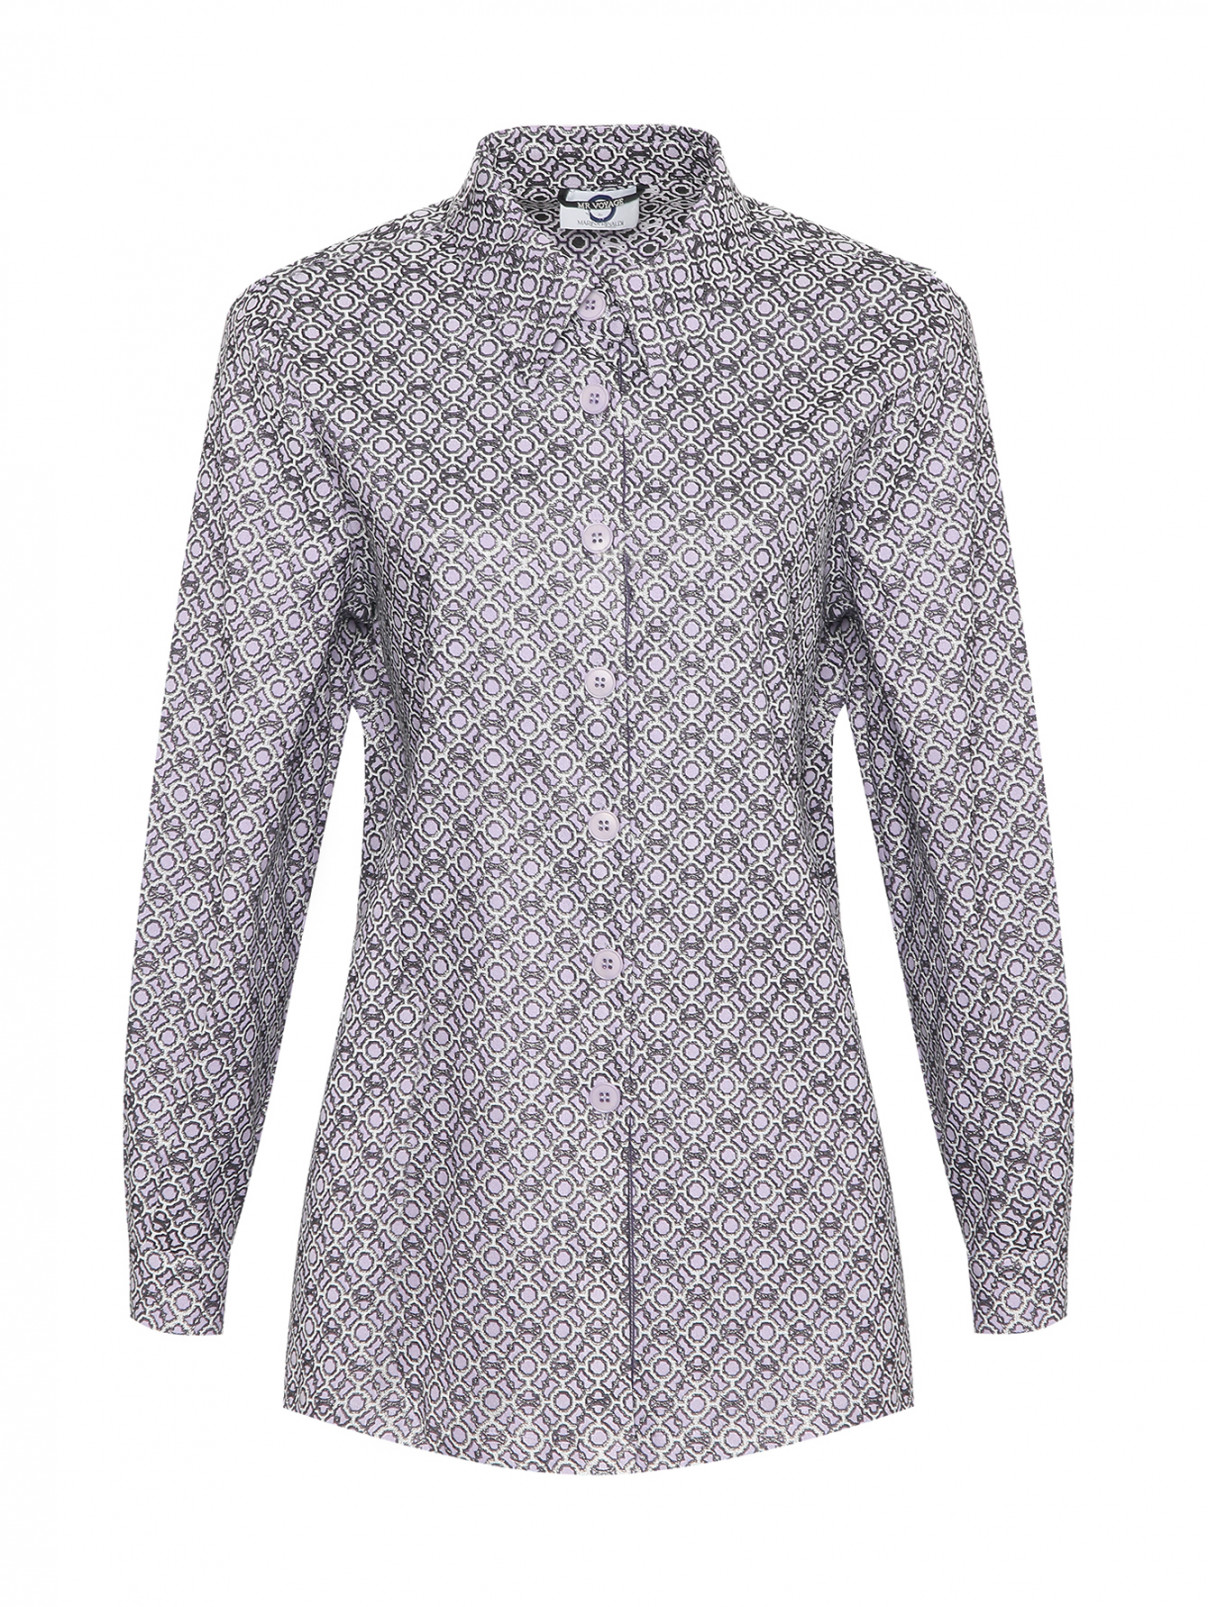 Рубашка с люрексом Marina Rinaldi  –  Общий вид  – Цвет:  Фиолетовый